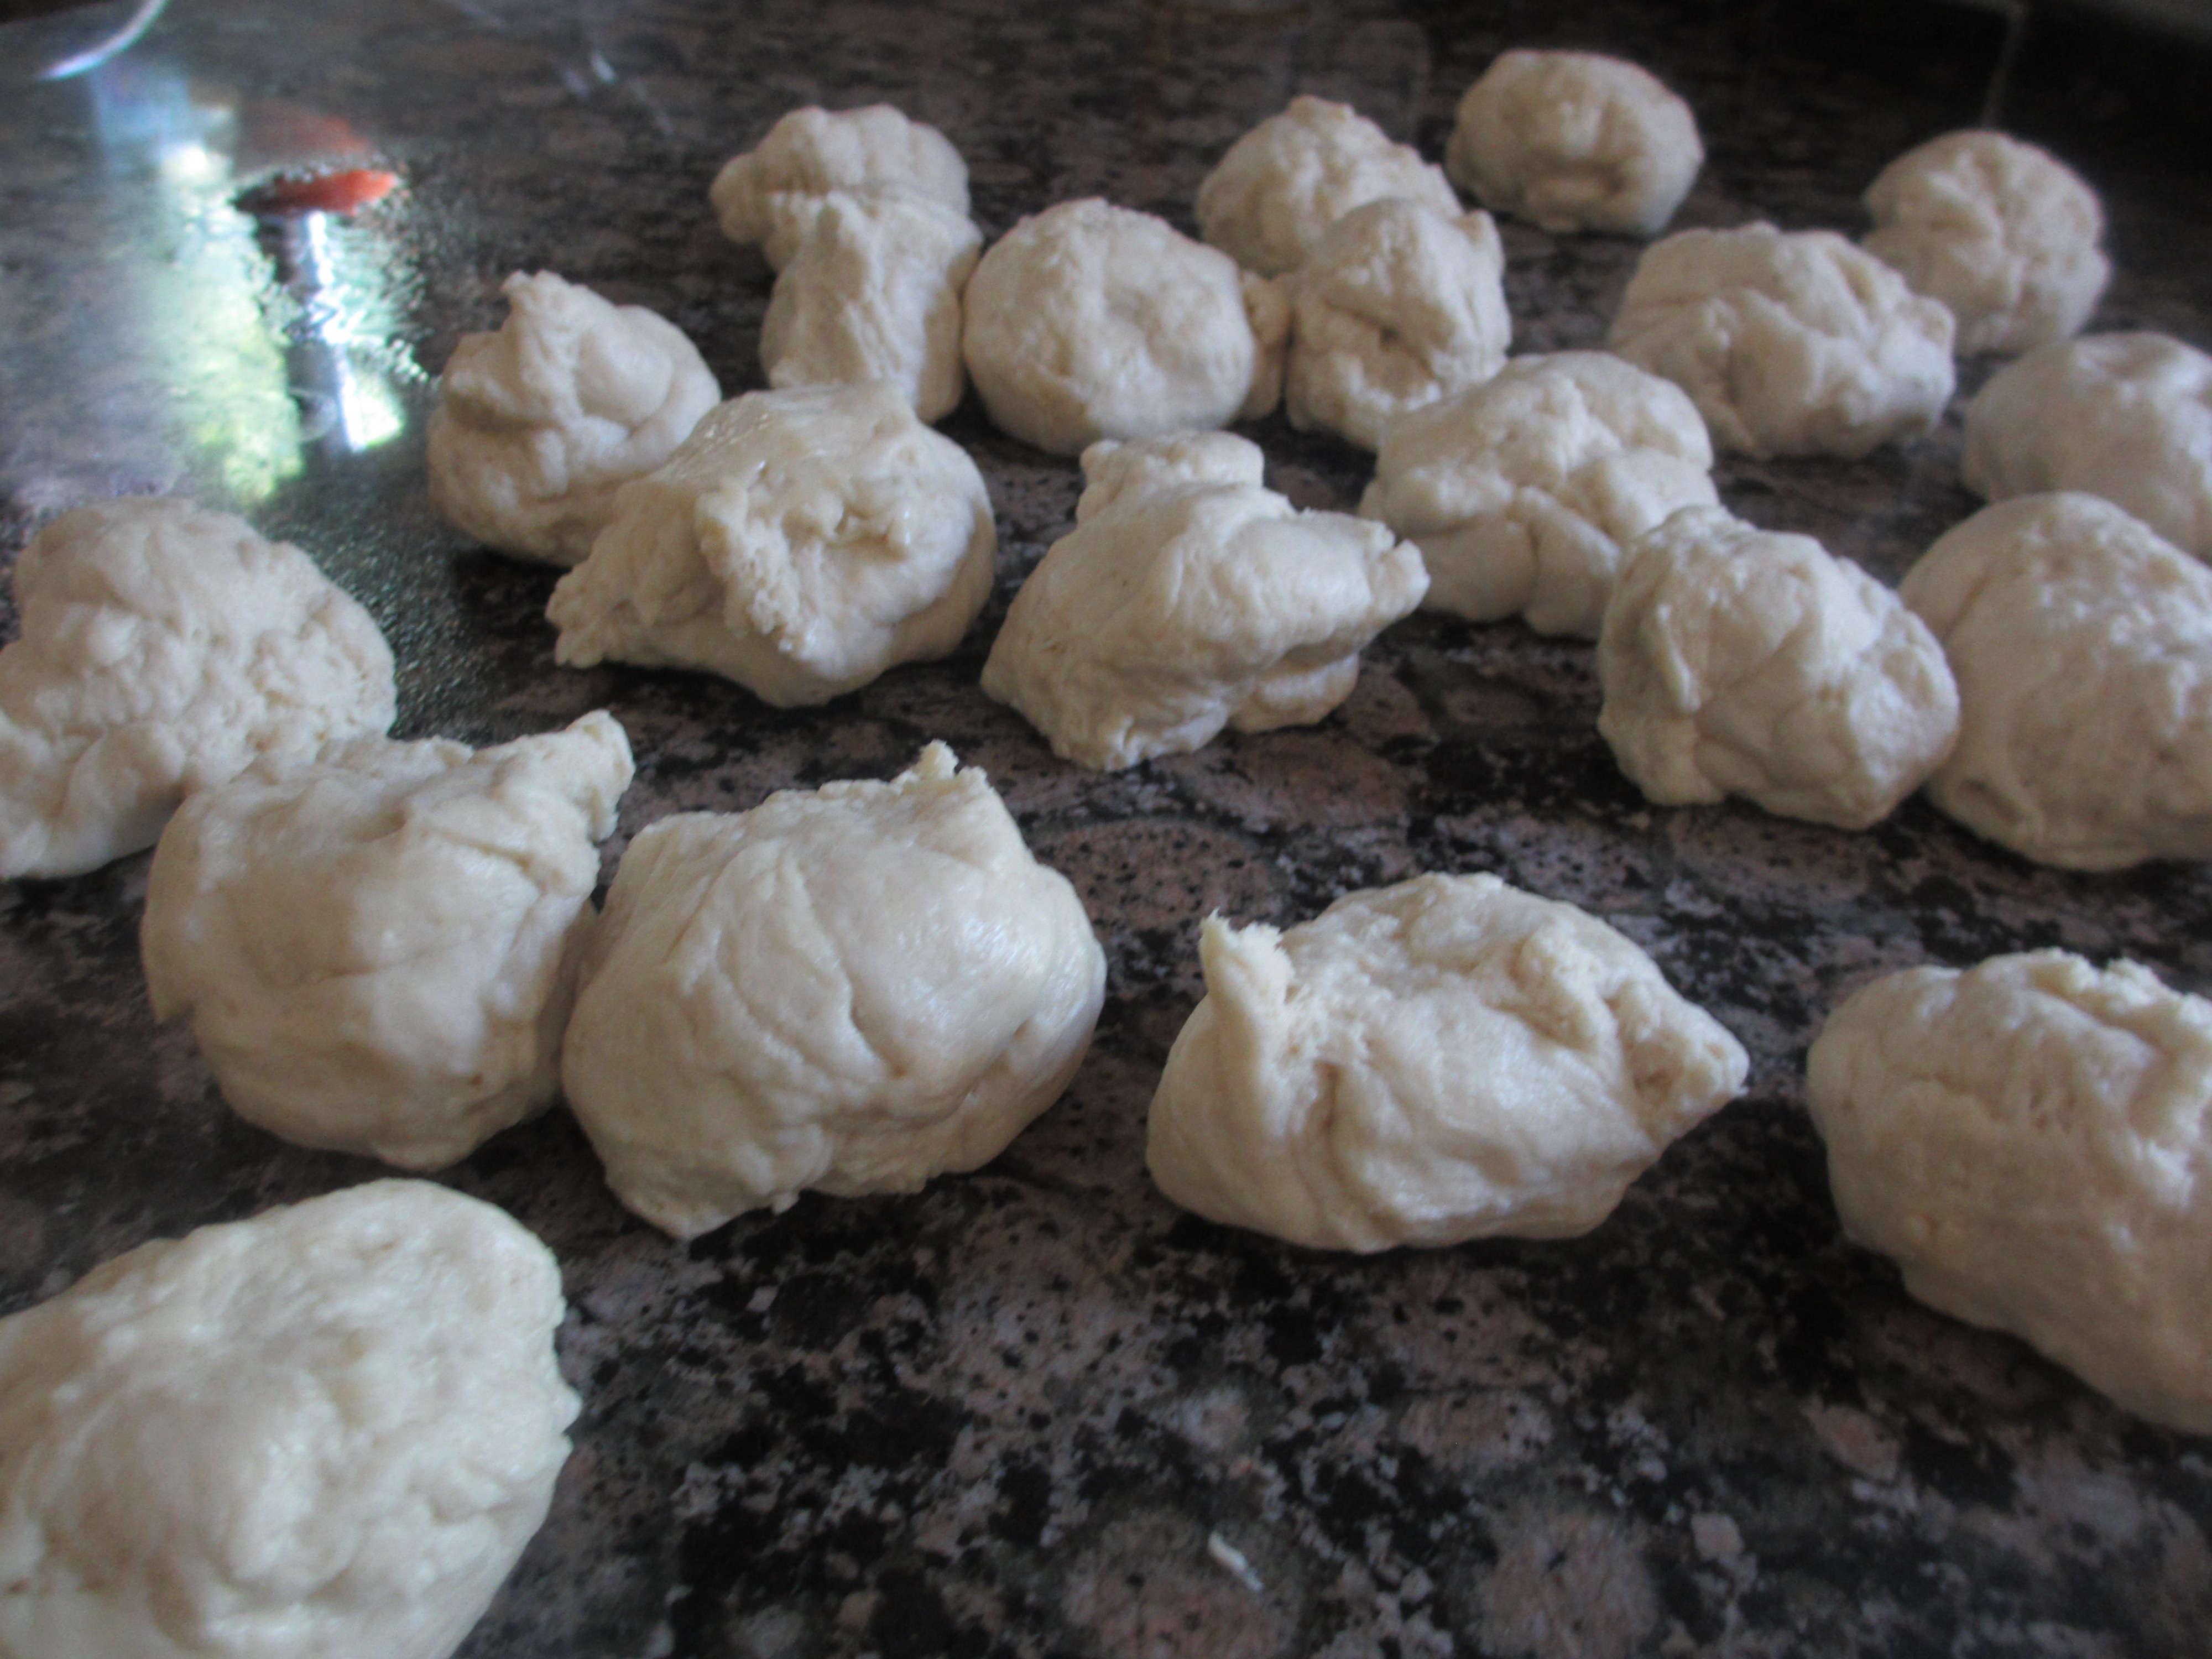 Piles of dough